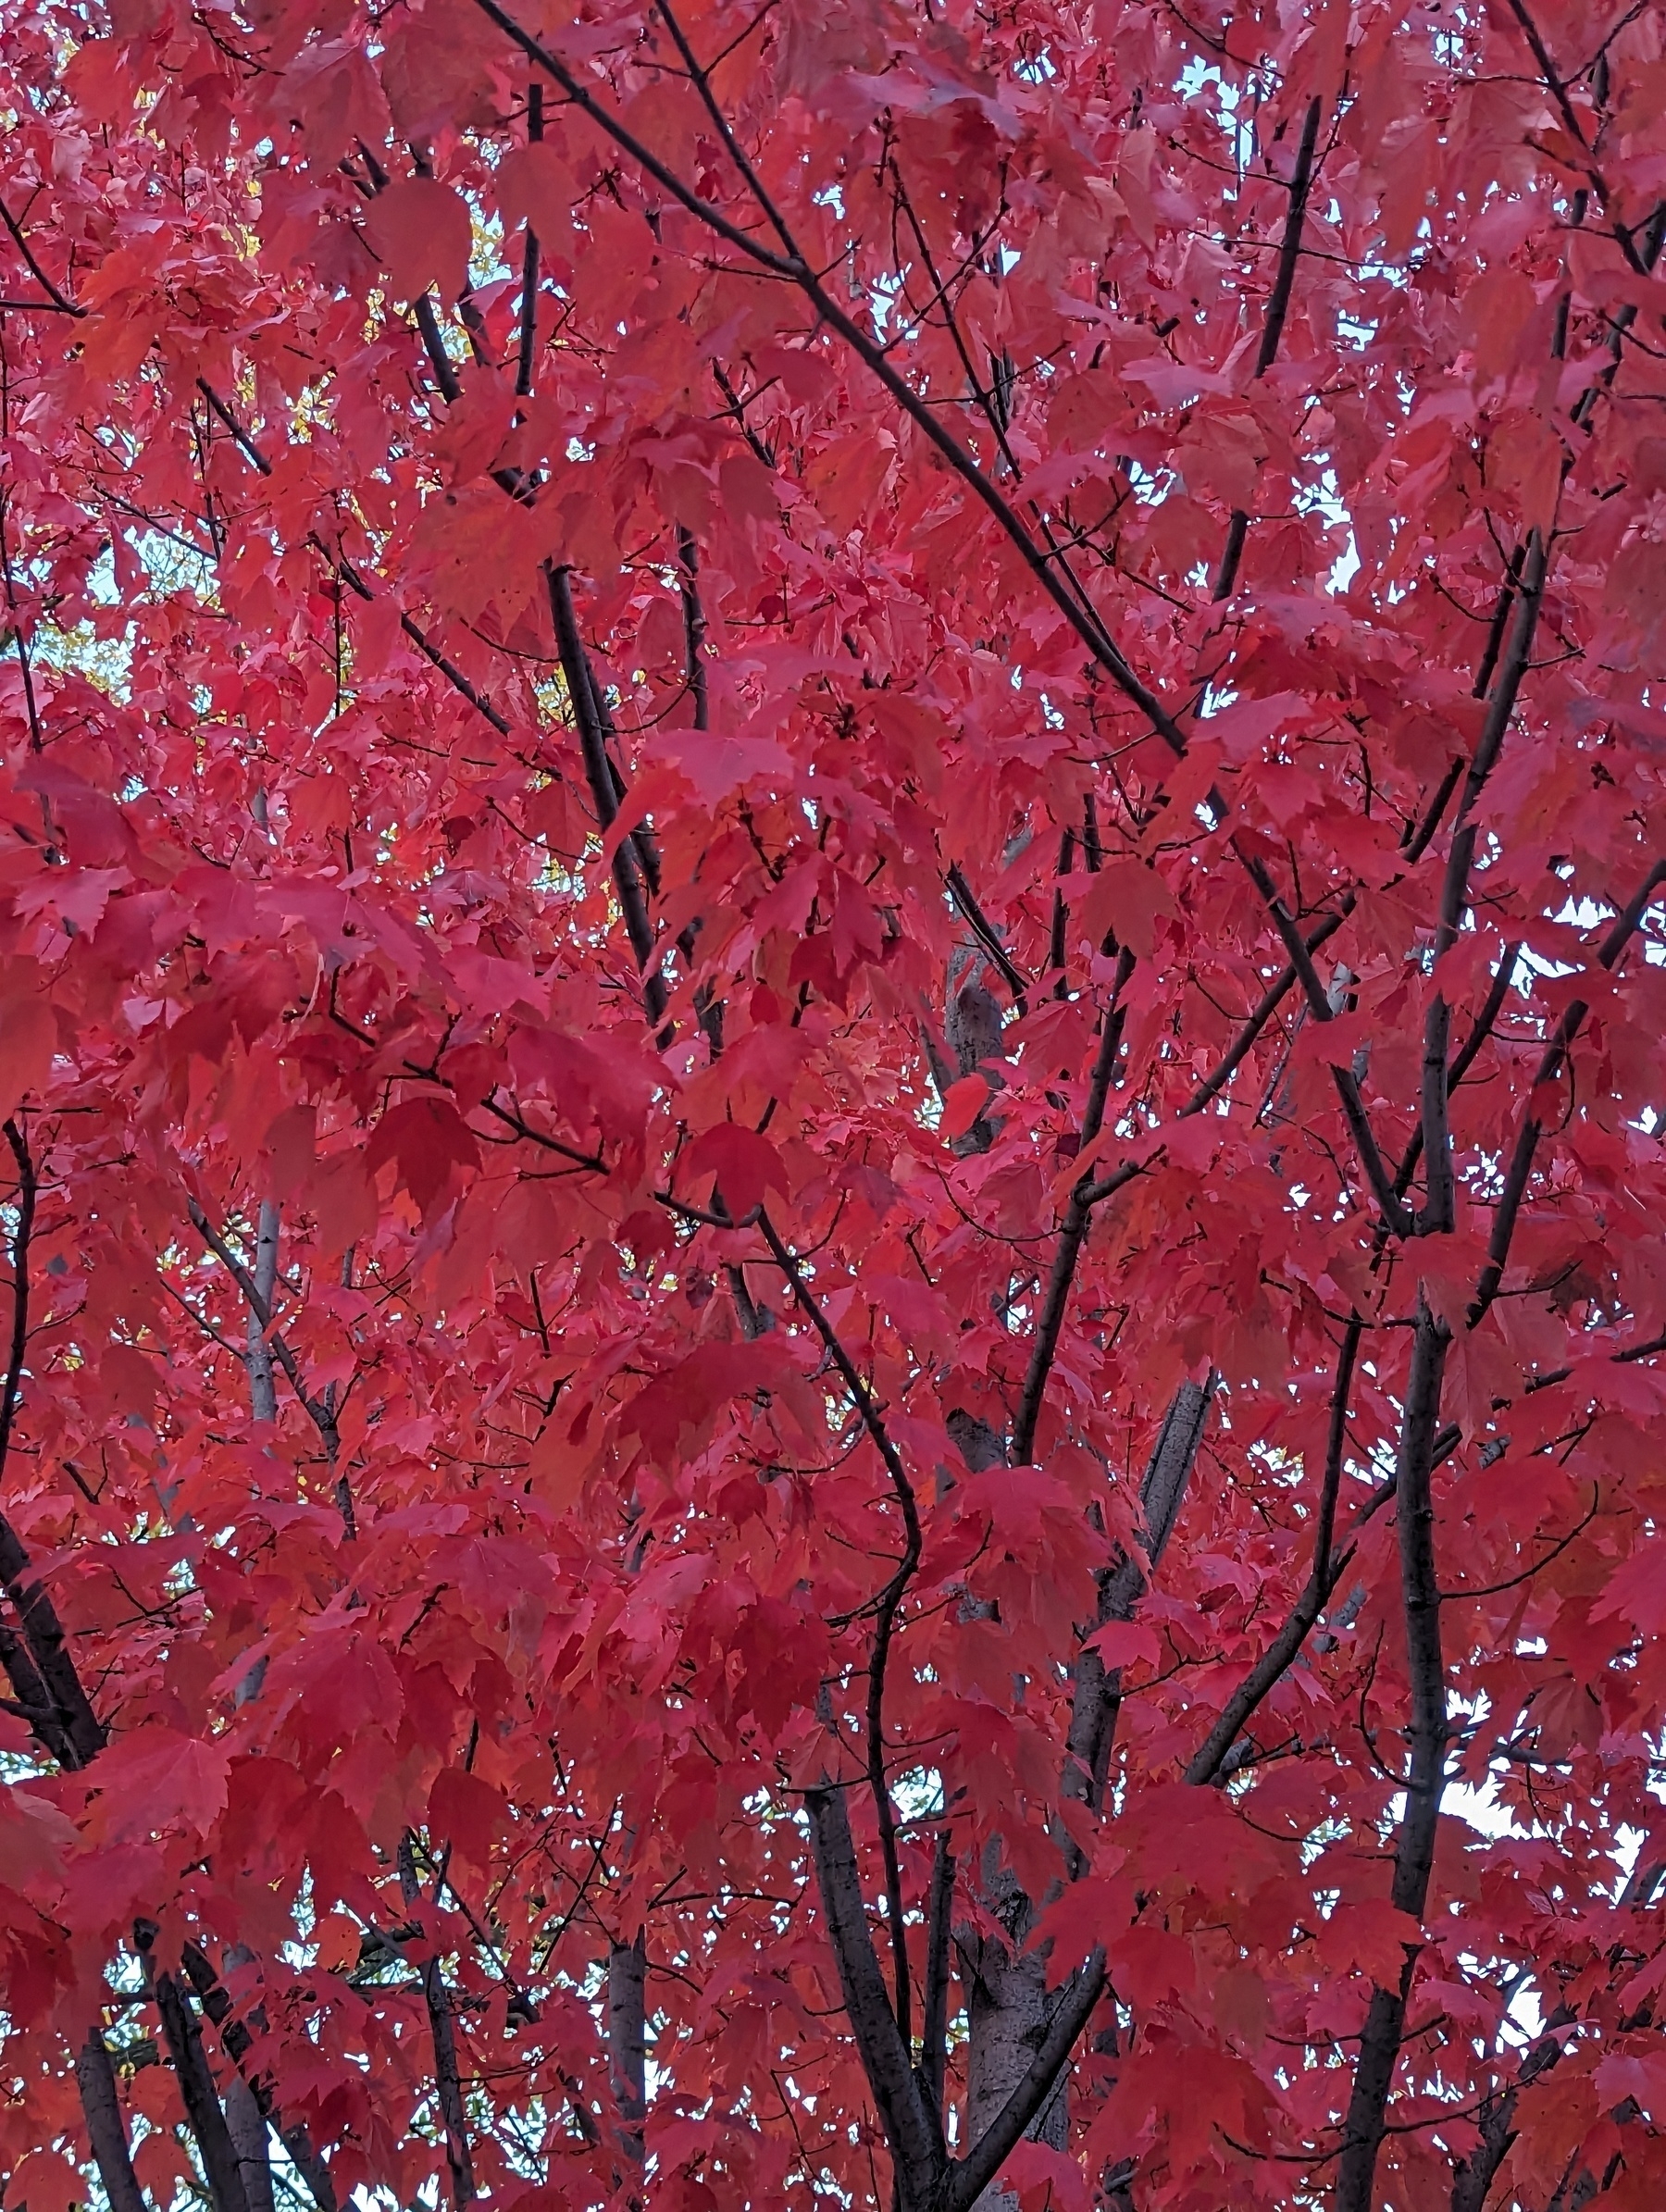 Fall maple tree